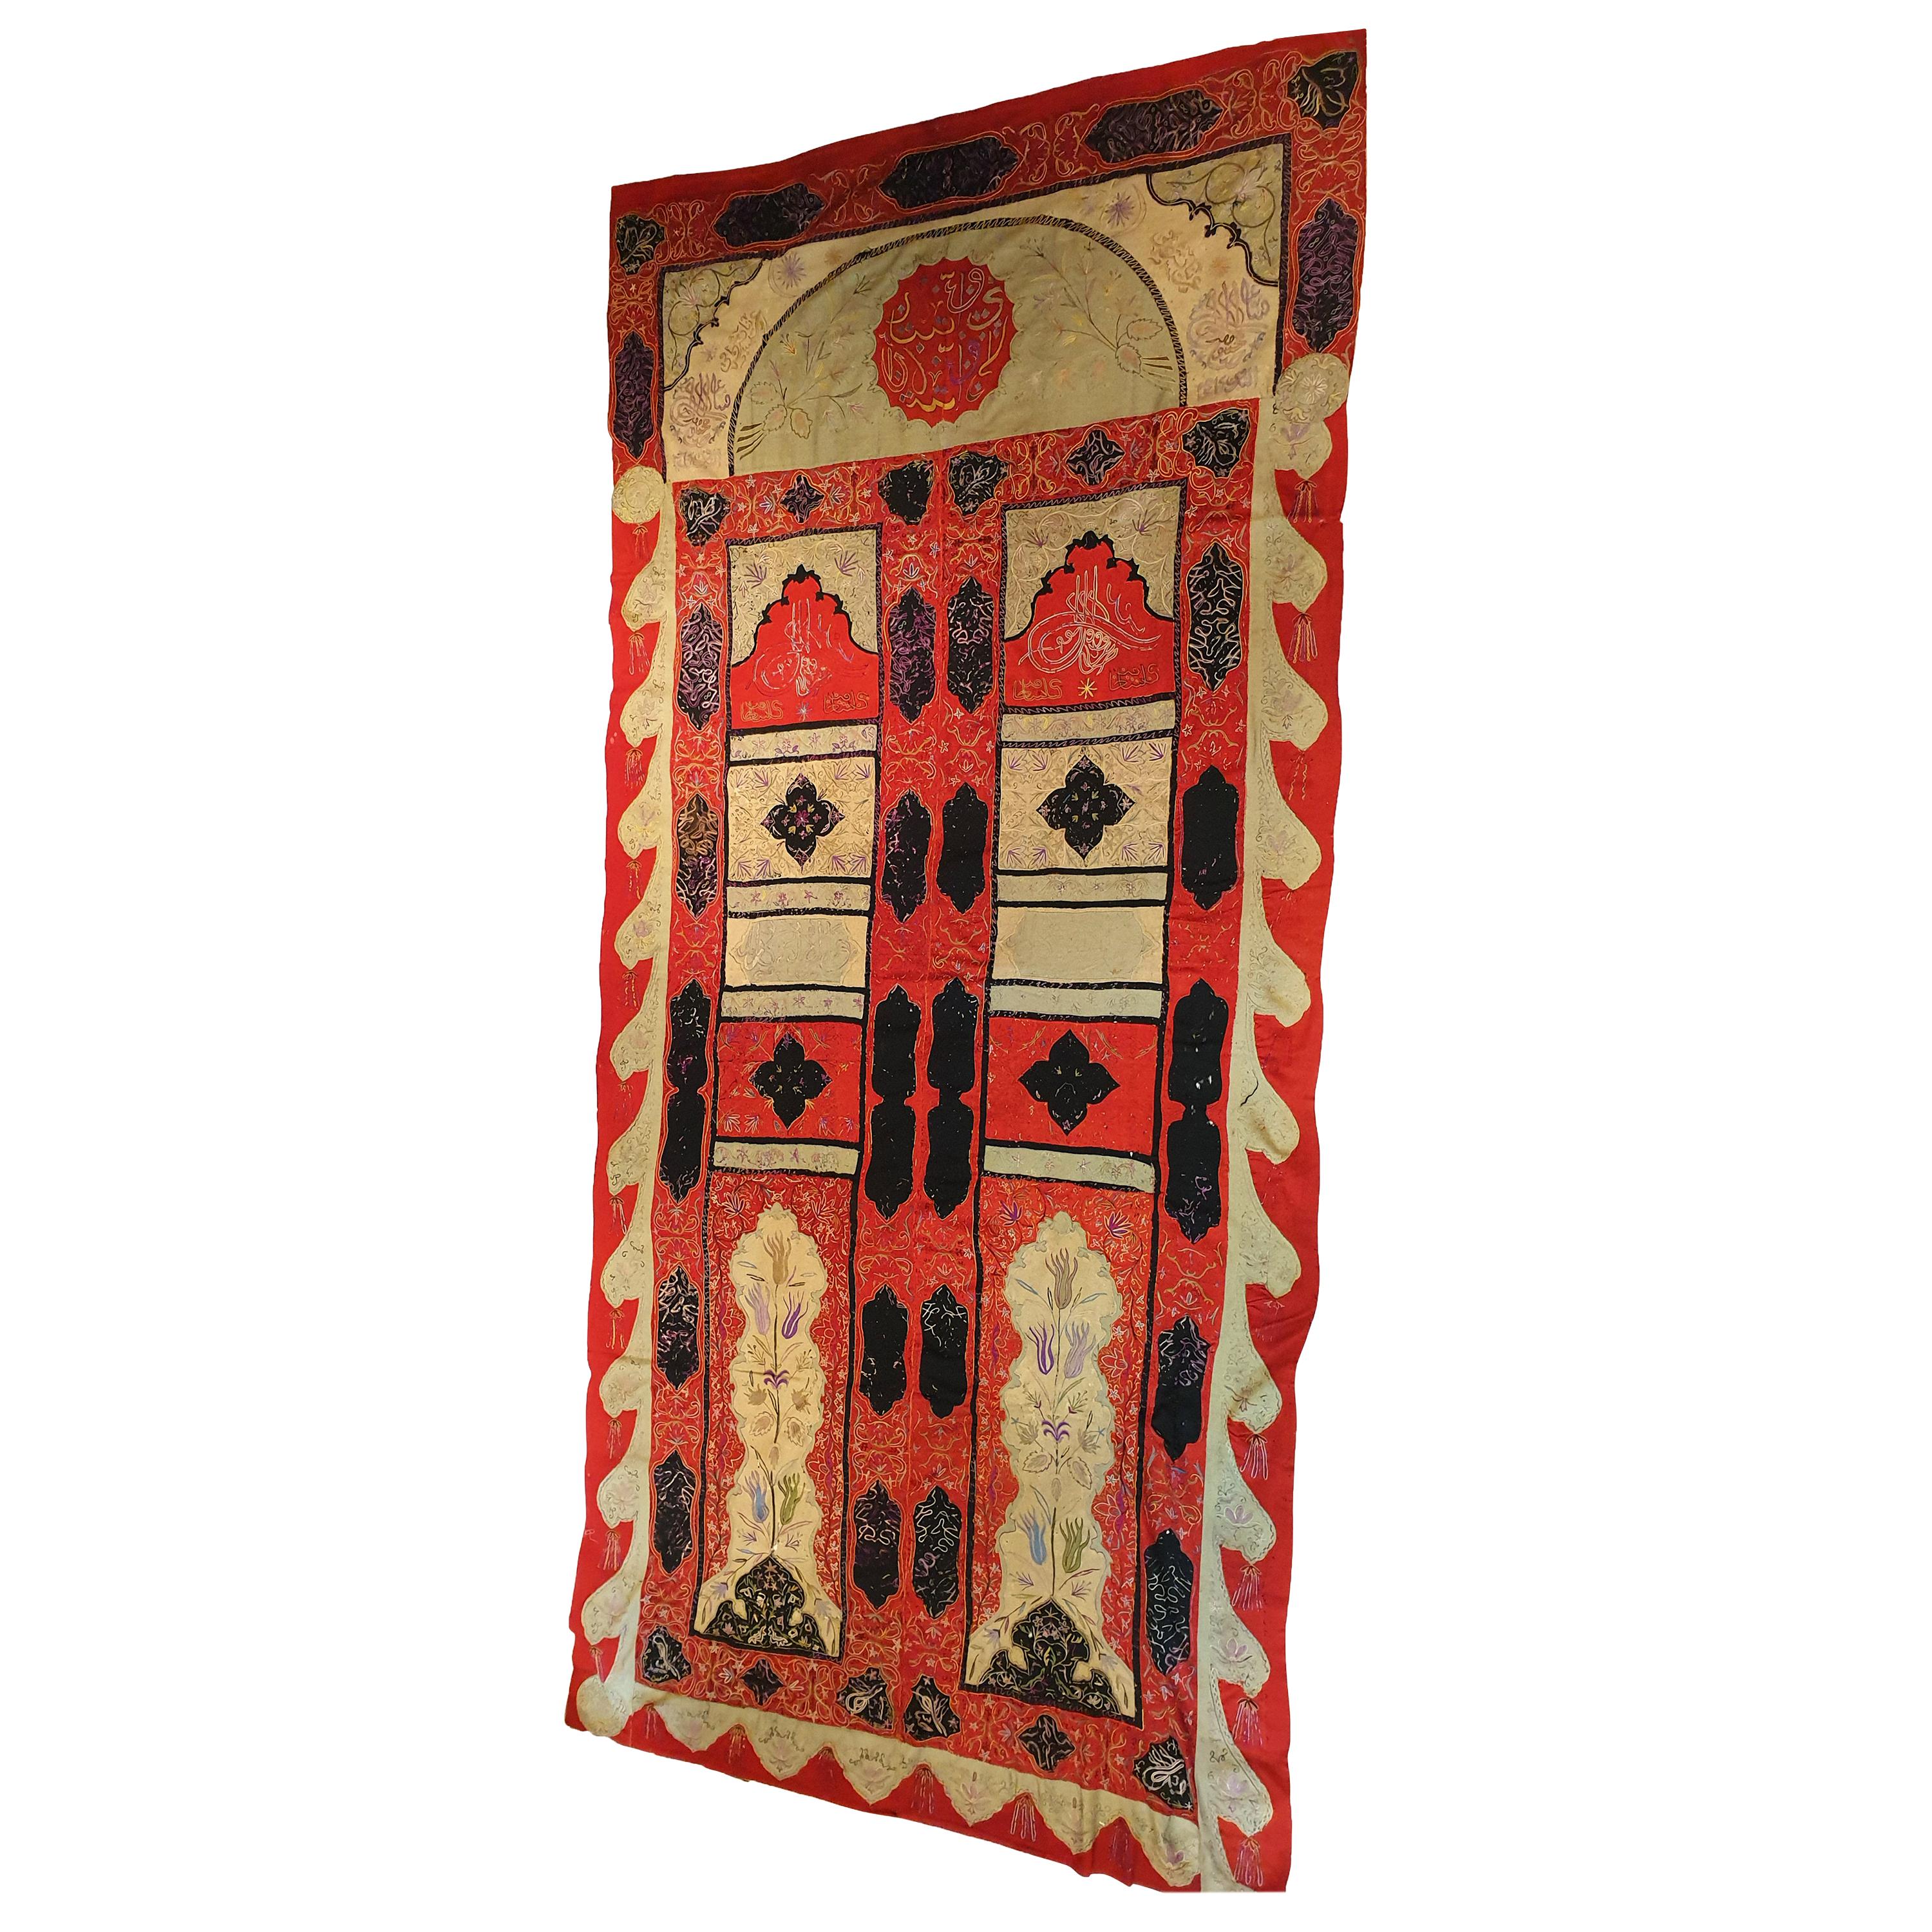 820 – orientalische Textilien aus dem 19. Jahrhundert